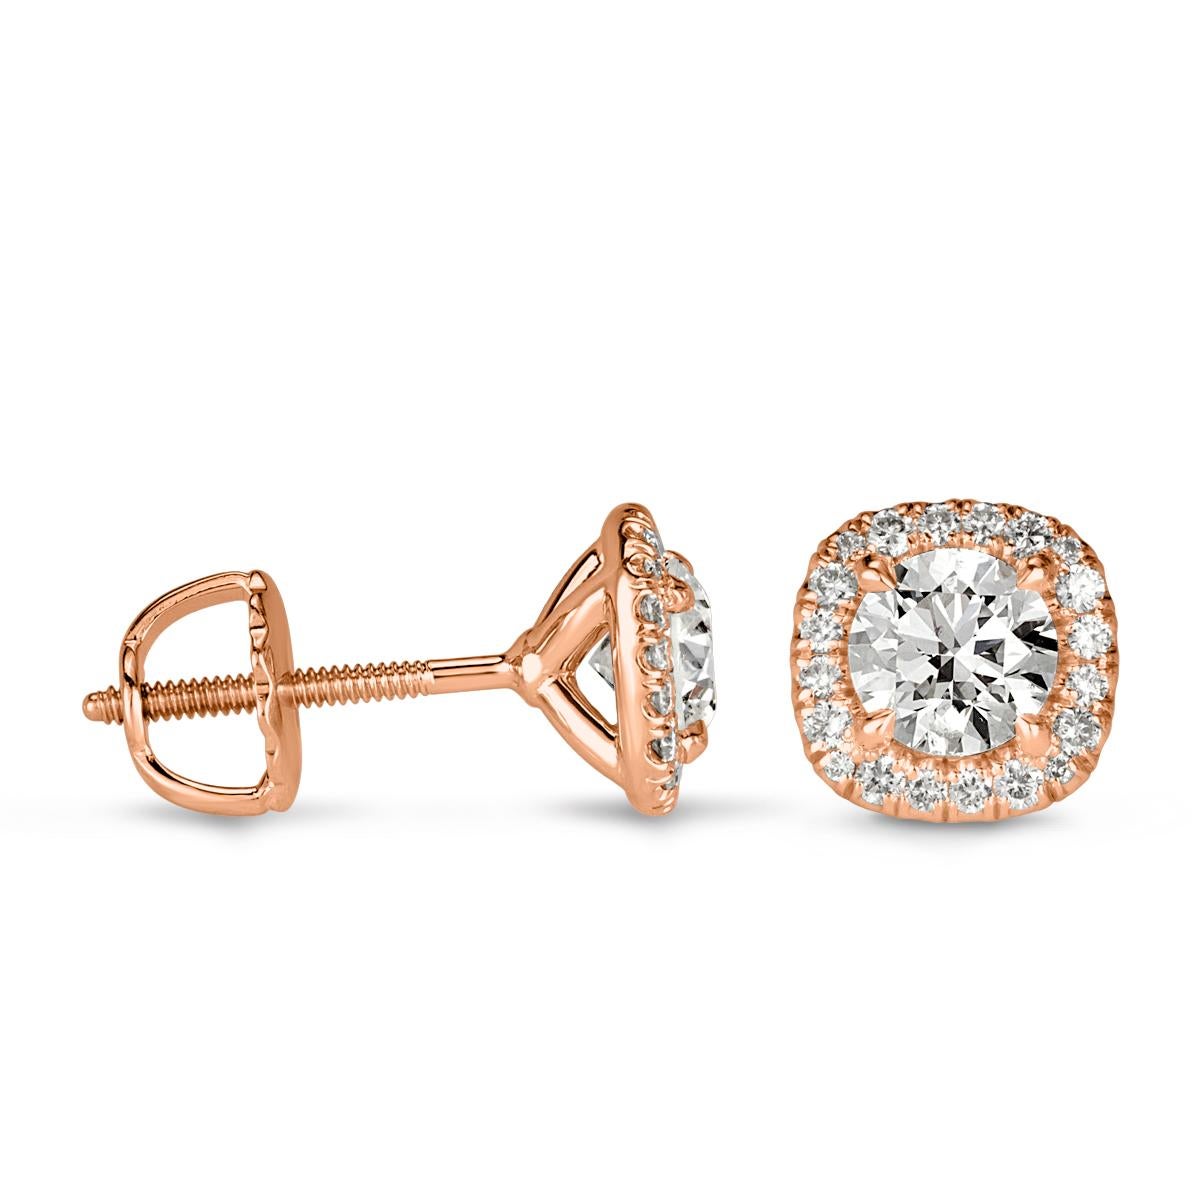 Dieses bezaubernde Paar Diamant-Ohrstecker aus 18 Karat Roségold präsentiert zwei runde Diamanten im Brillantschliff, die jeweils von einem kissenförmigen Halo aus kleineren runden Diamanten im Brillantschliff umgeben sind. Die Diamanten haben ein